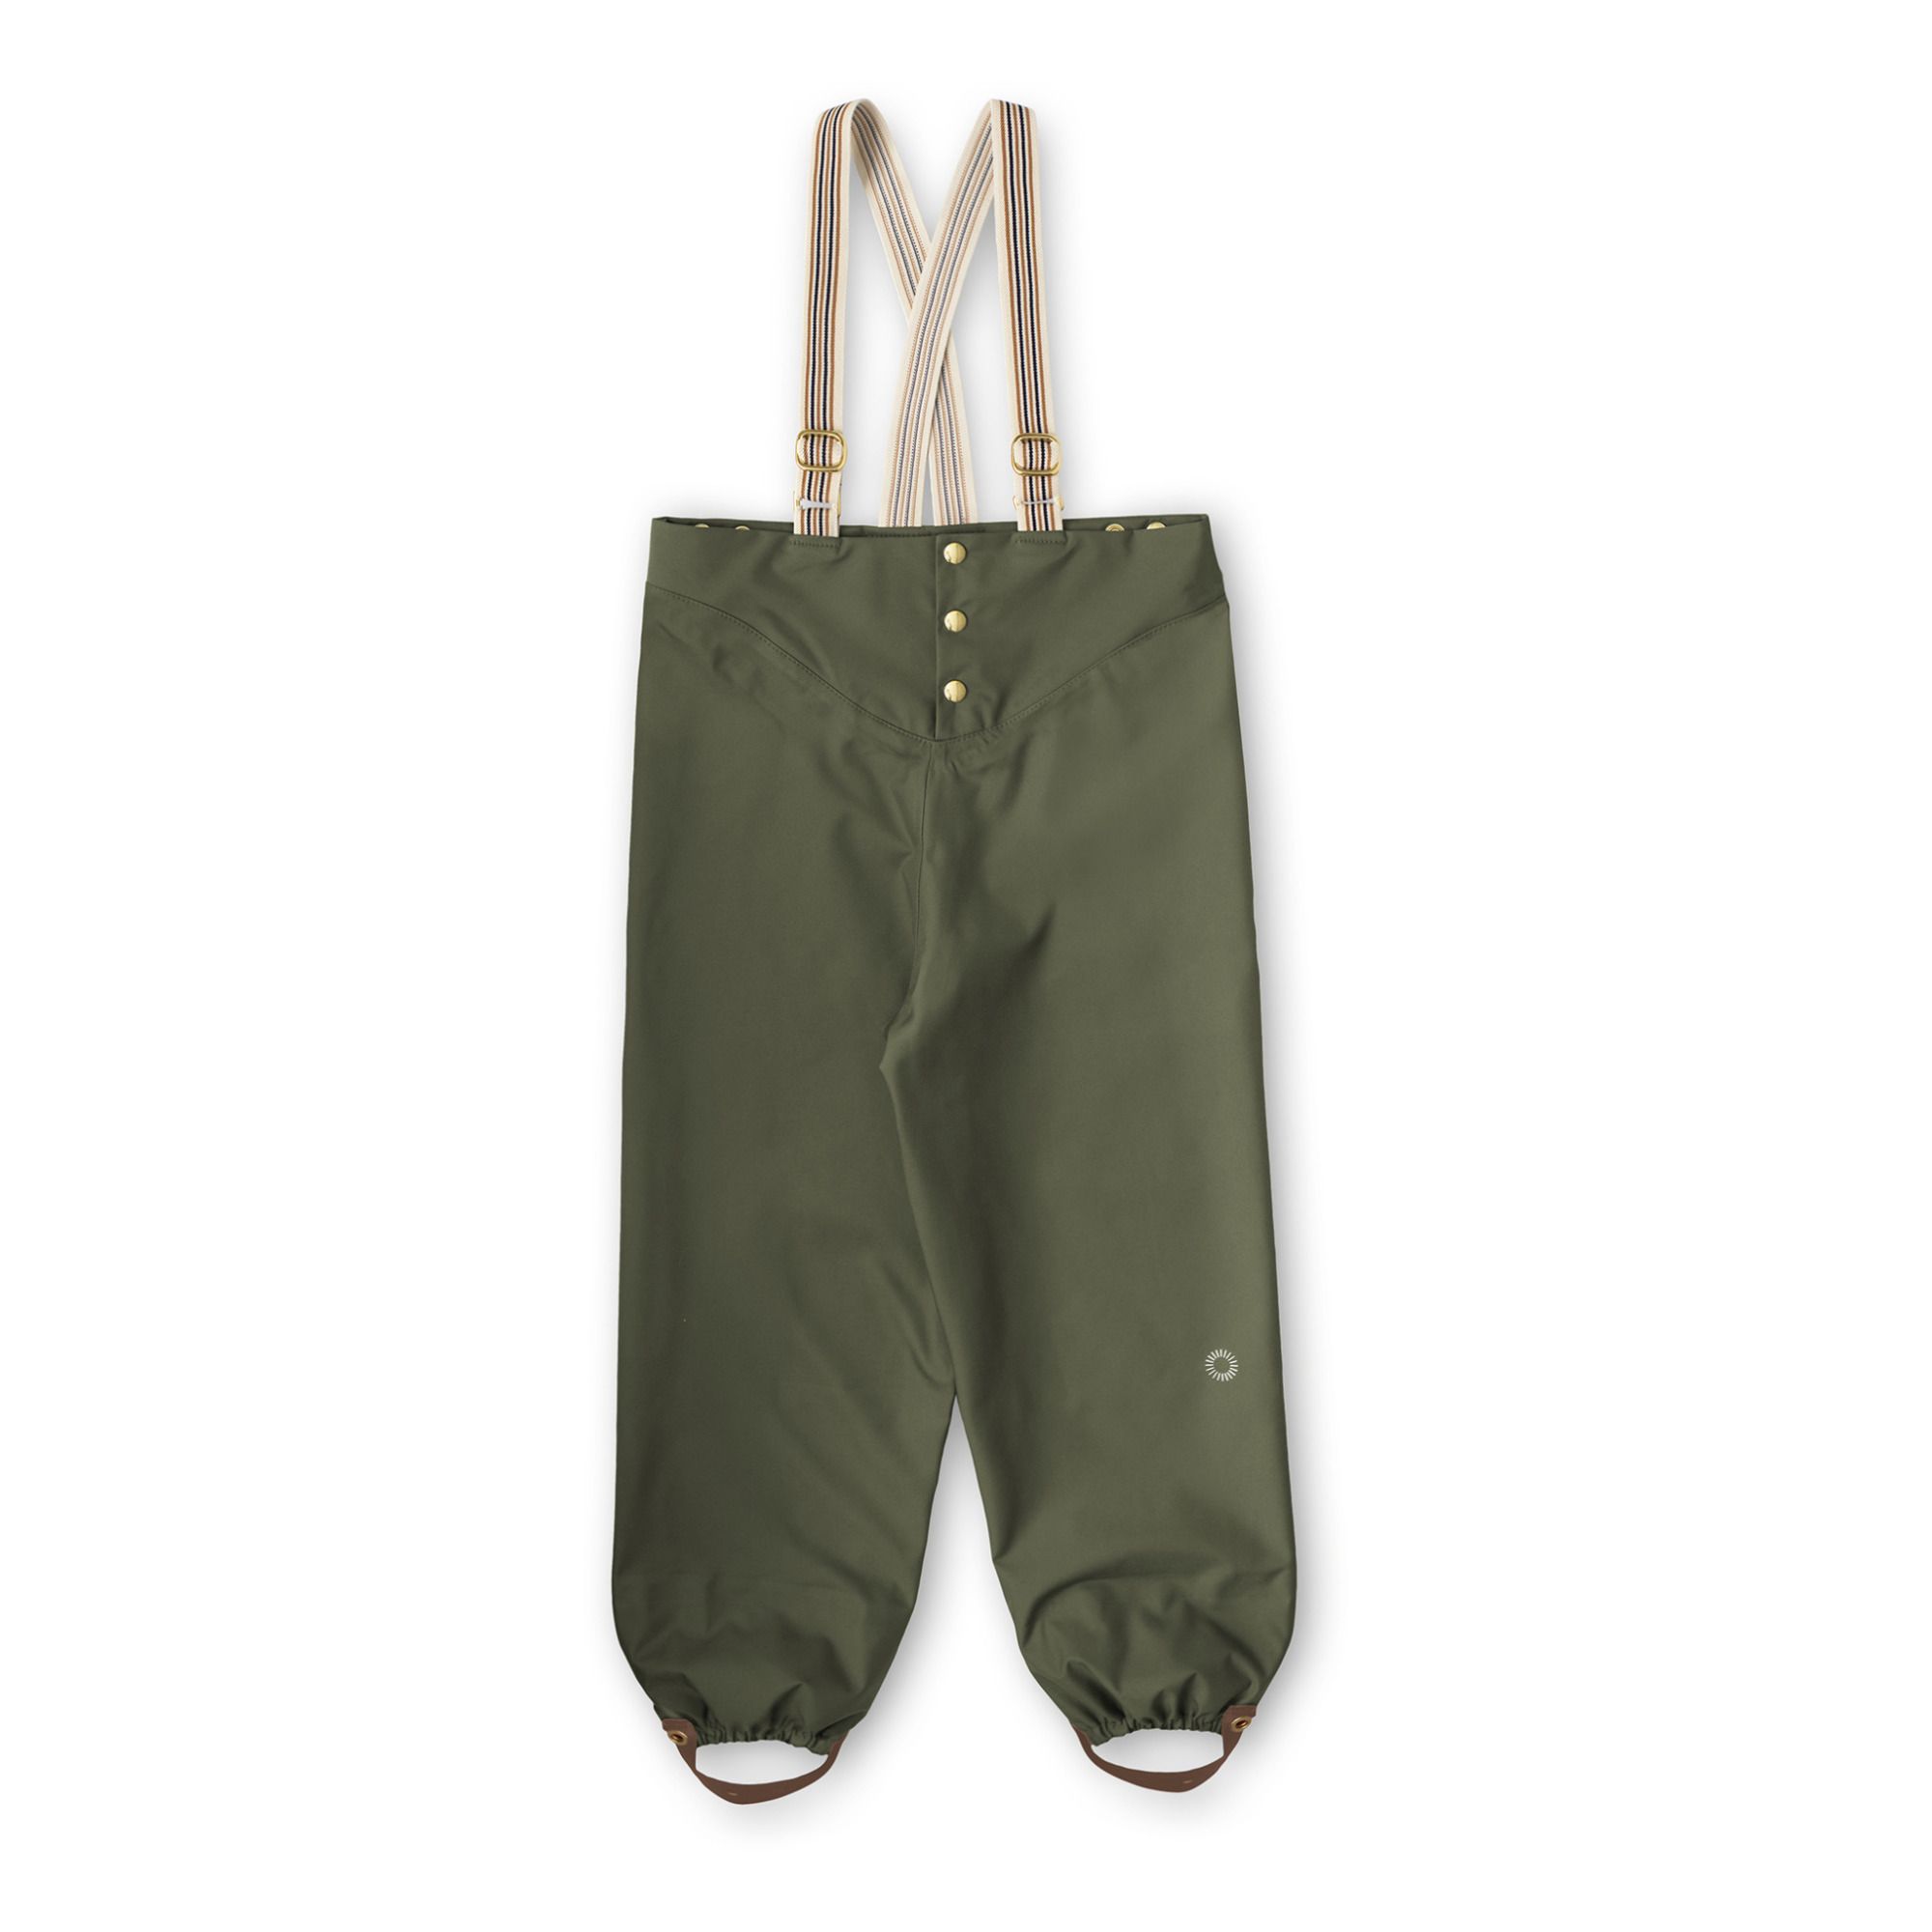 Faire Child - Pantalon Bretelles Recyclé - Fille - Vert kaki